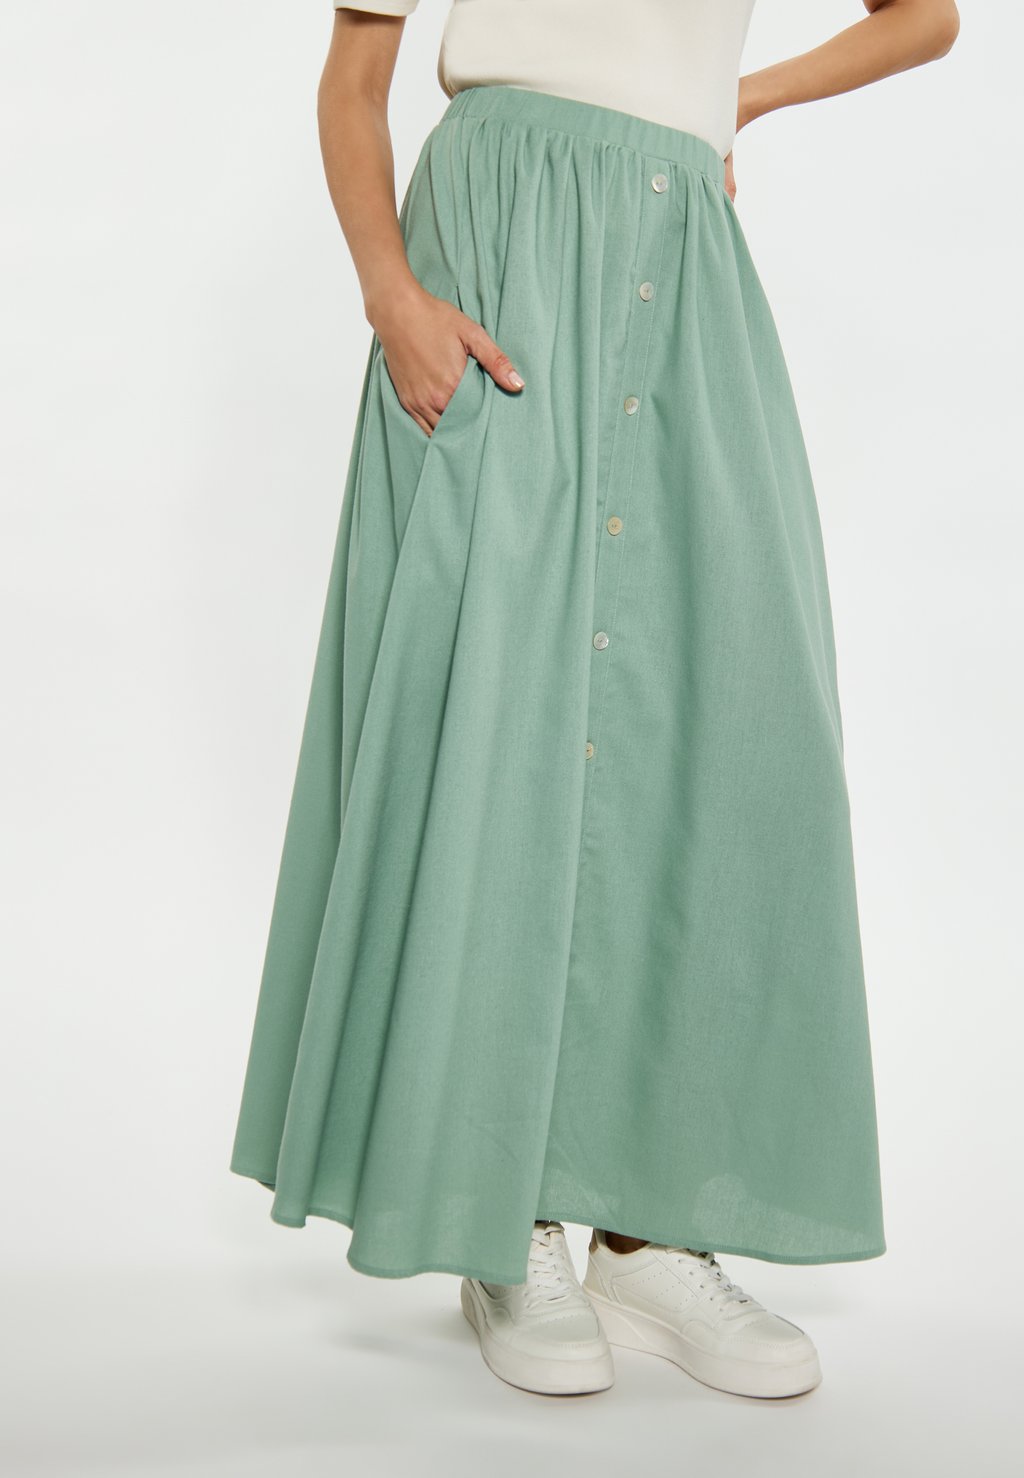 Длинная юбка usha, зеленый